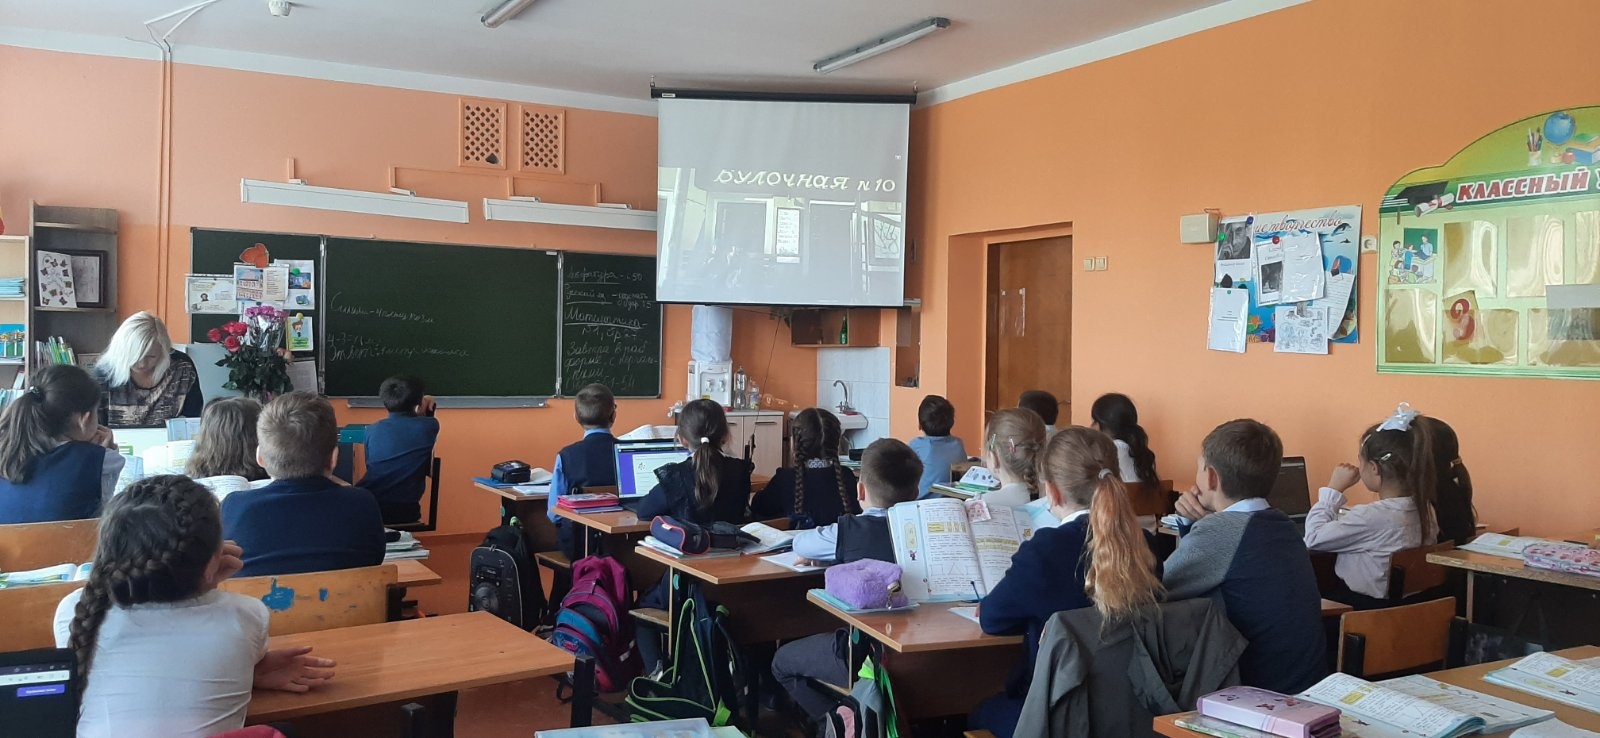 В Разуменской СОШ №3 реализуется всероссийский проект «Киноуроки в школах России»